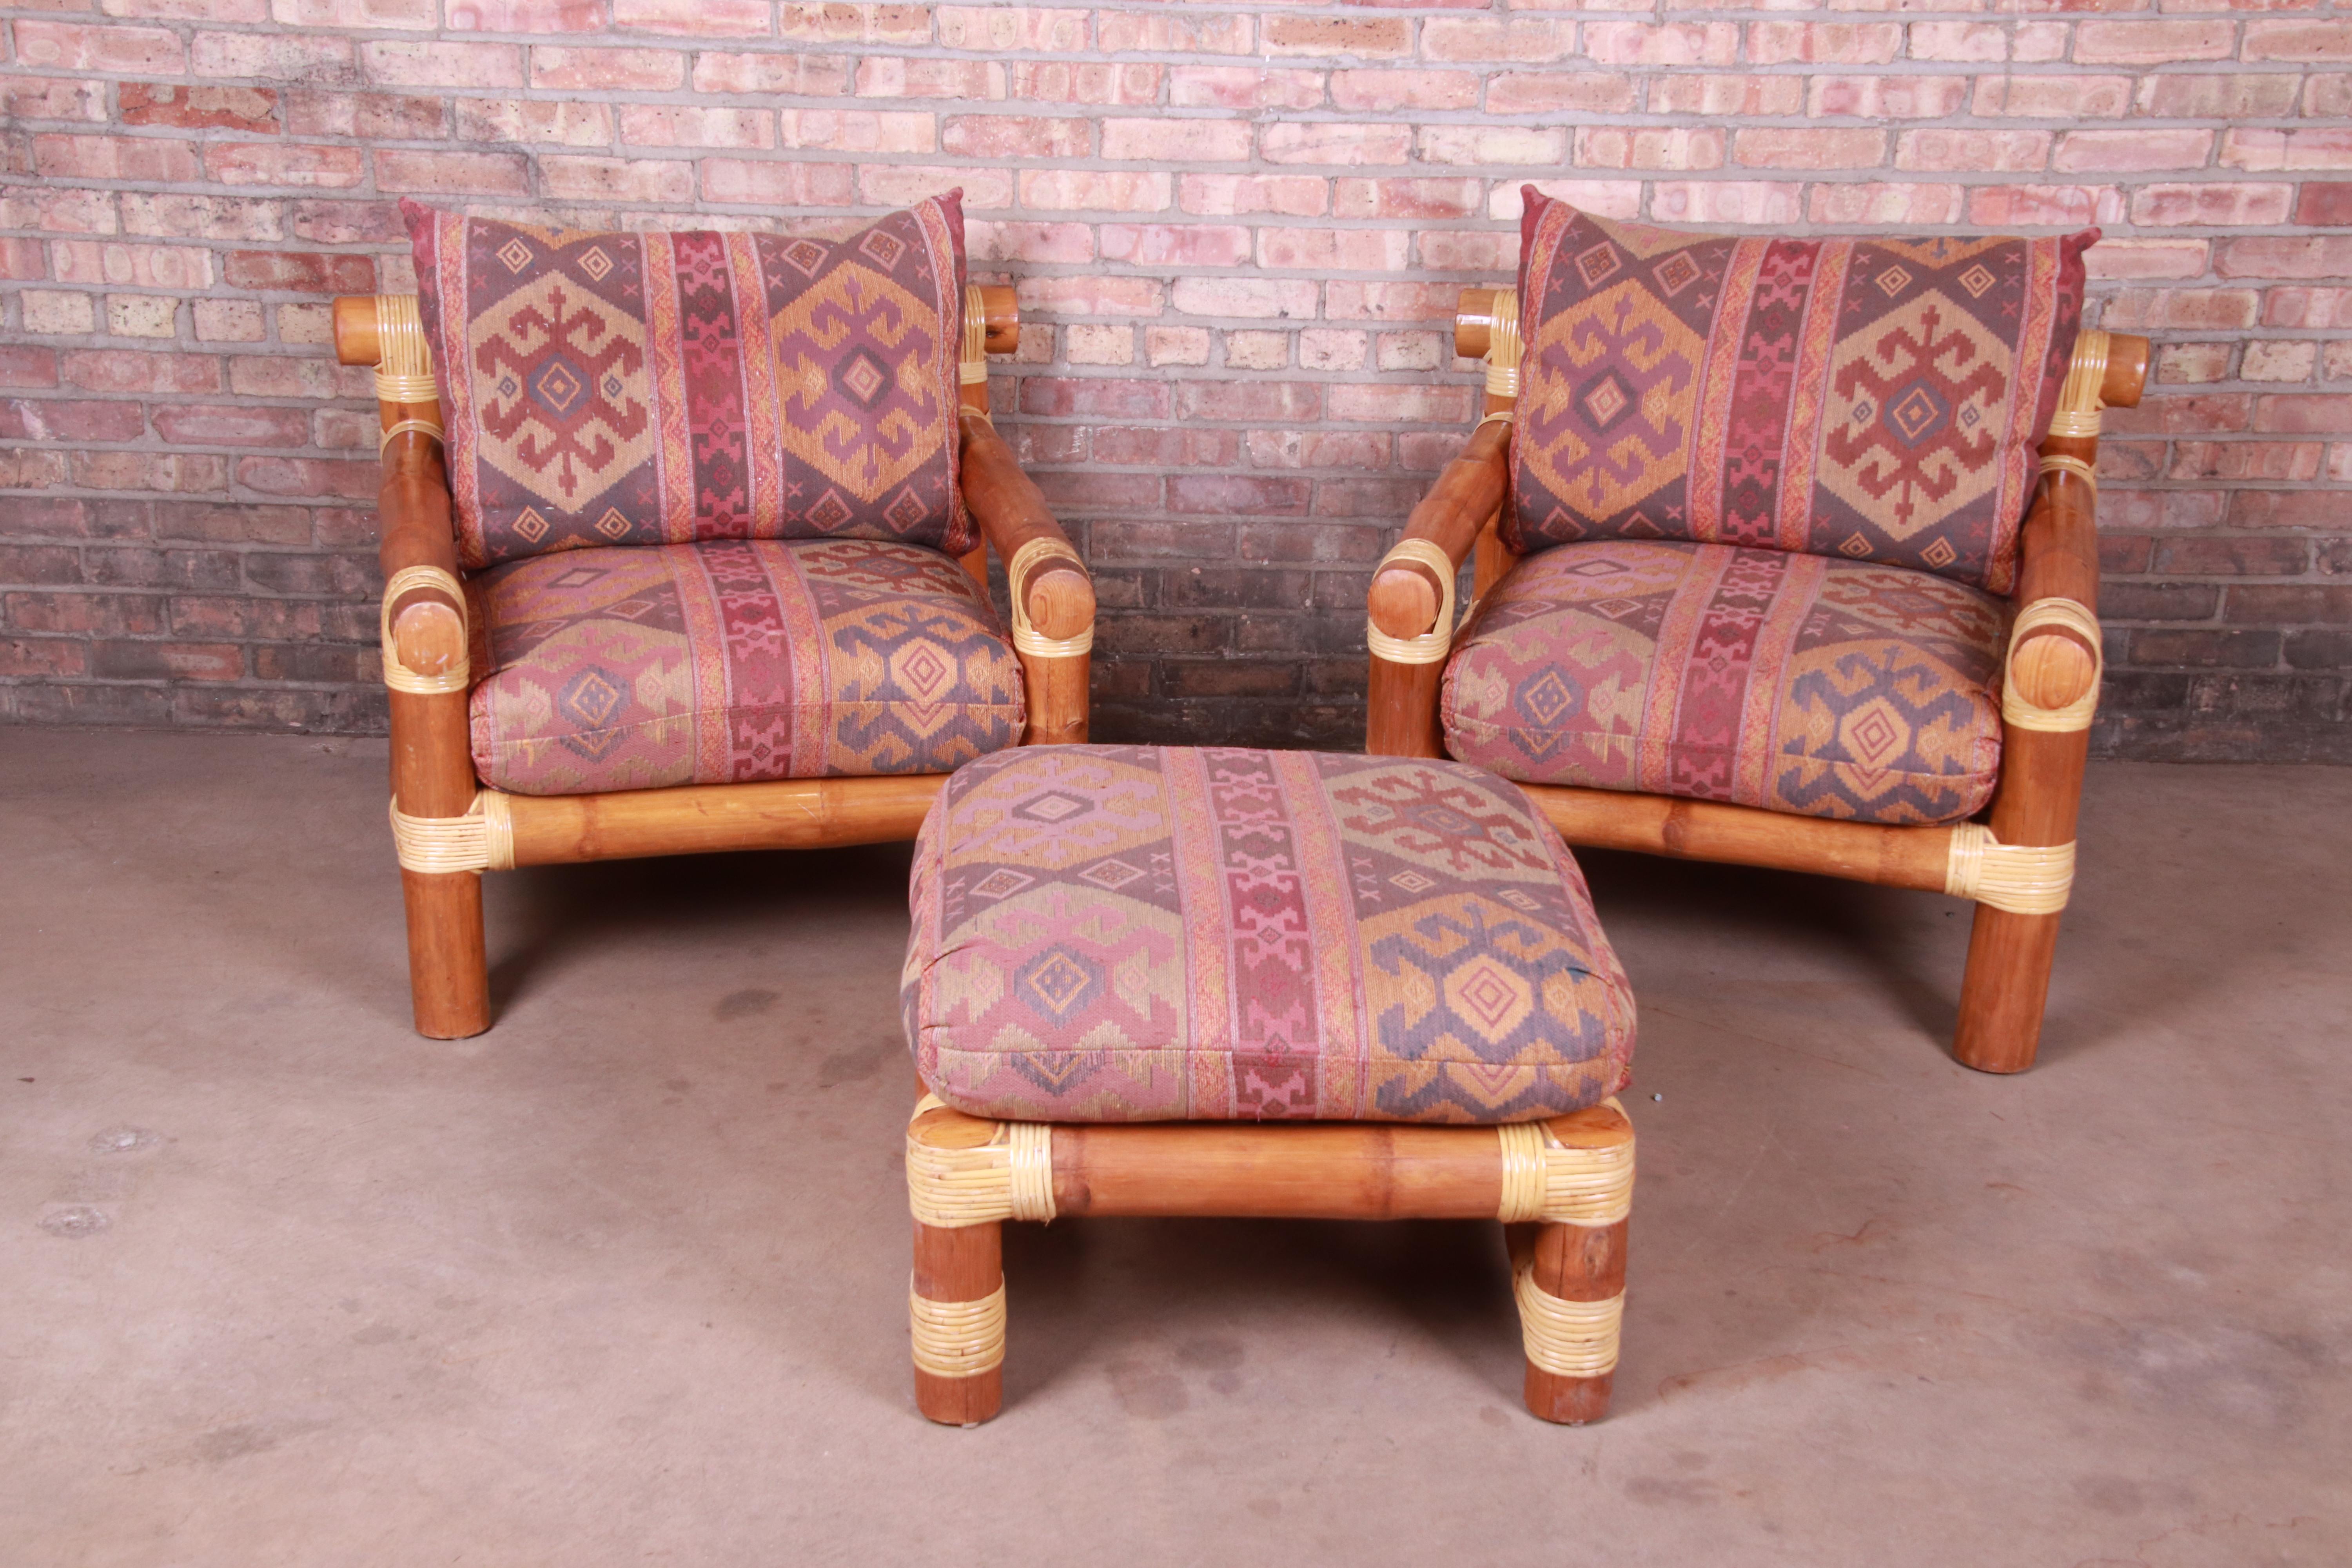 Une paire exceptionnelle de chaises longues surdimensionnées en rotin de bambou avec ottoman assorti en tapisserie Kilim

Philippines, 20ème siècle

Mesures :
Chaises 34,13